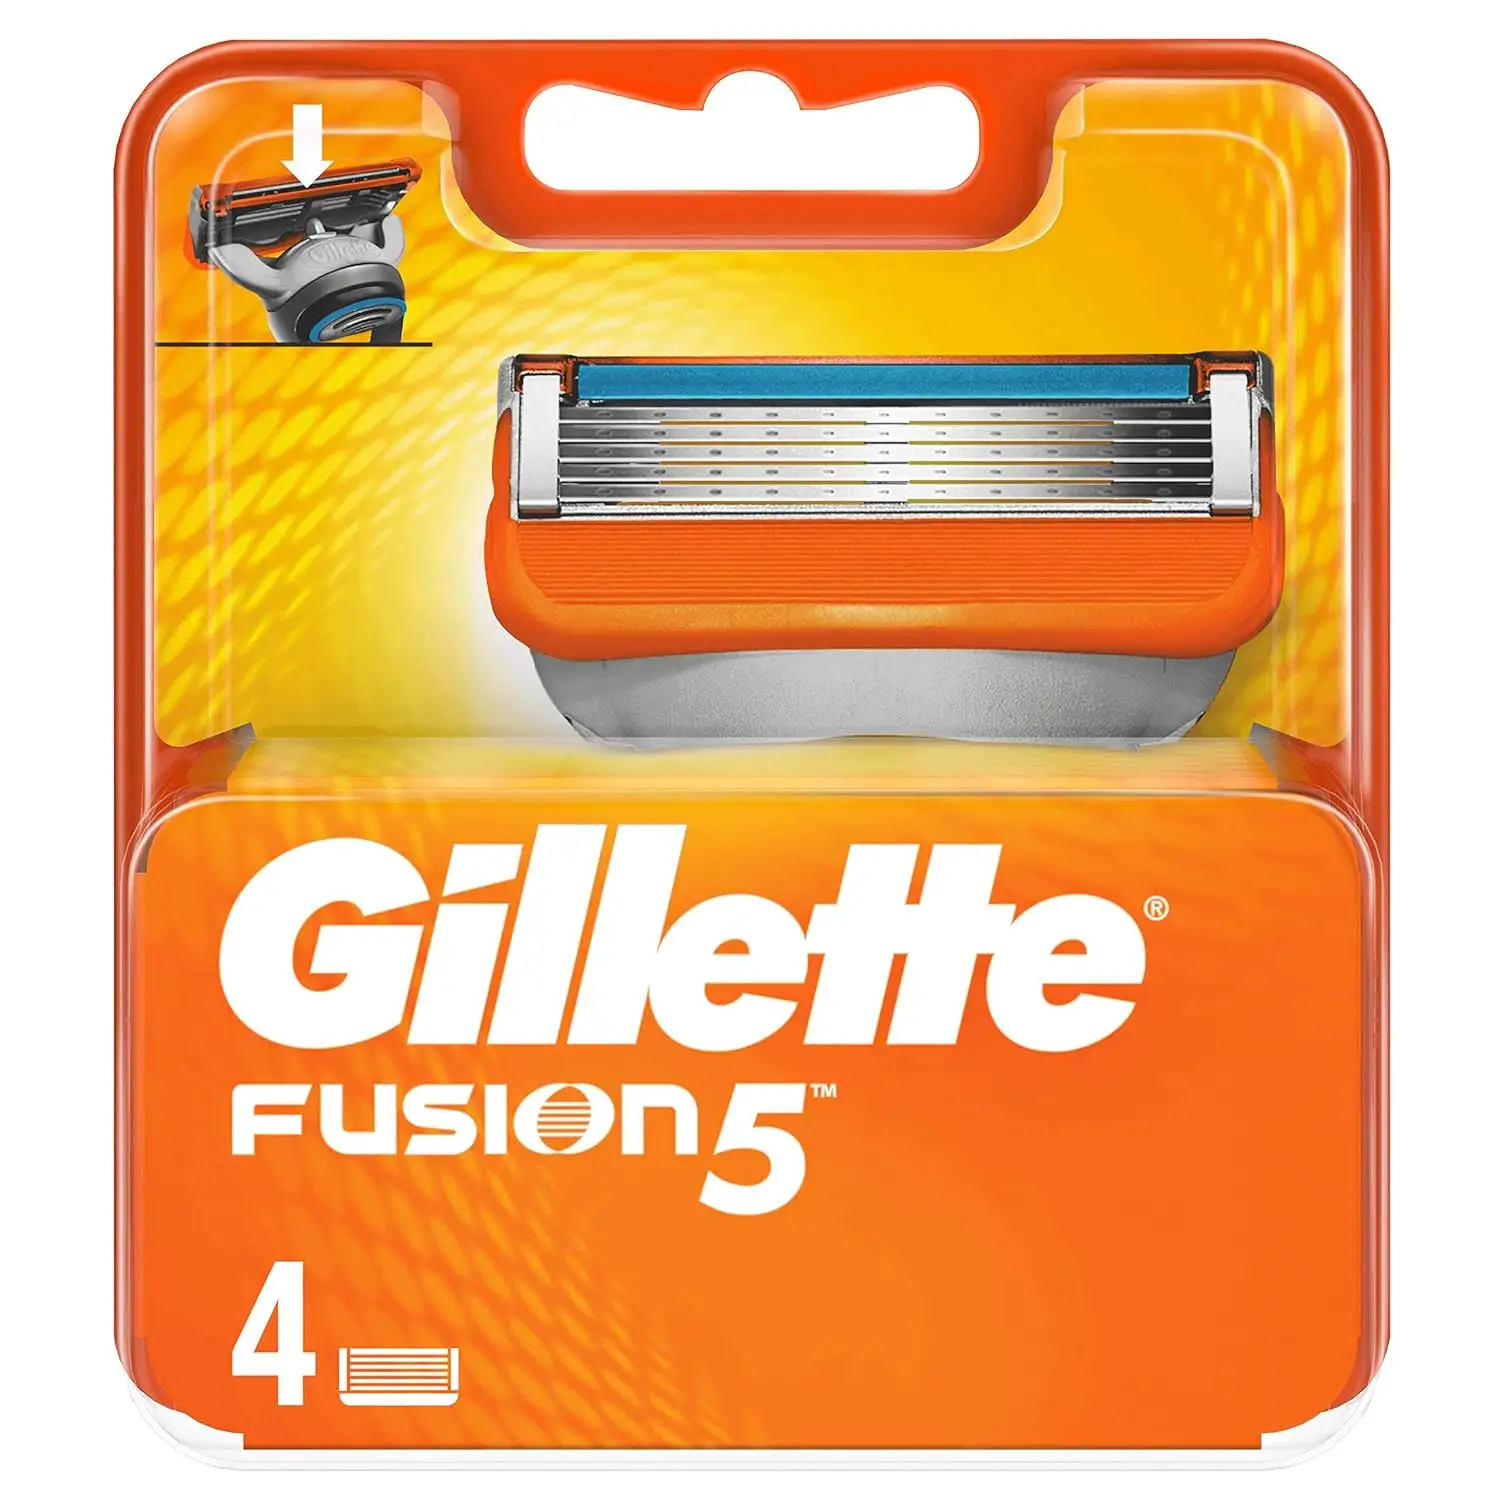 Gillette fension5 pisau cukur untuk pria, pegangan + 2 pisau cukur isi ulang, Gillette Fusion 5 pisau untuk pria penggantian harga grosir